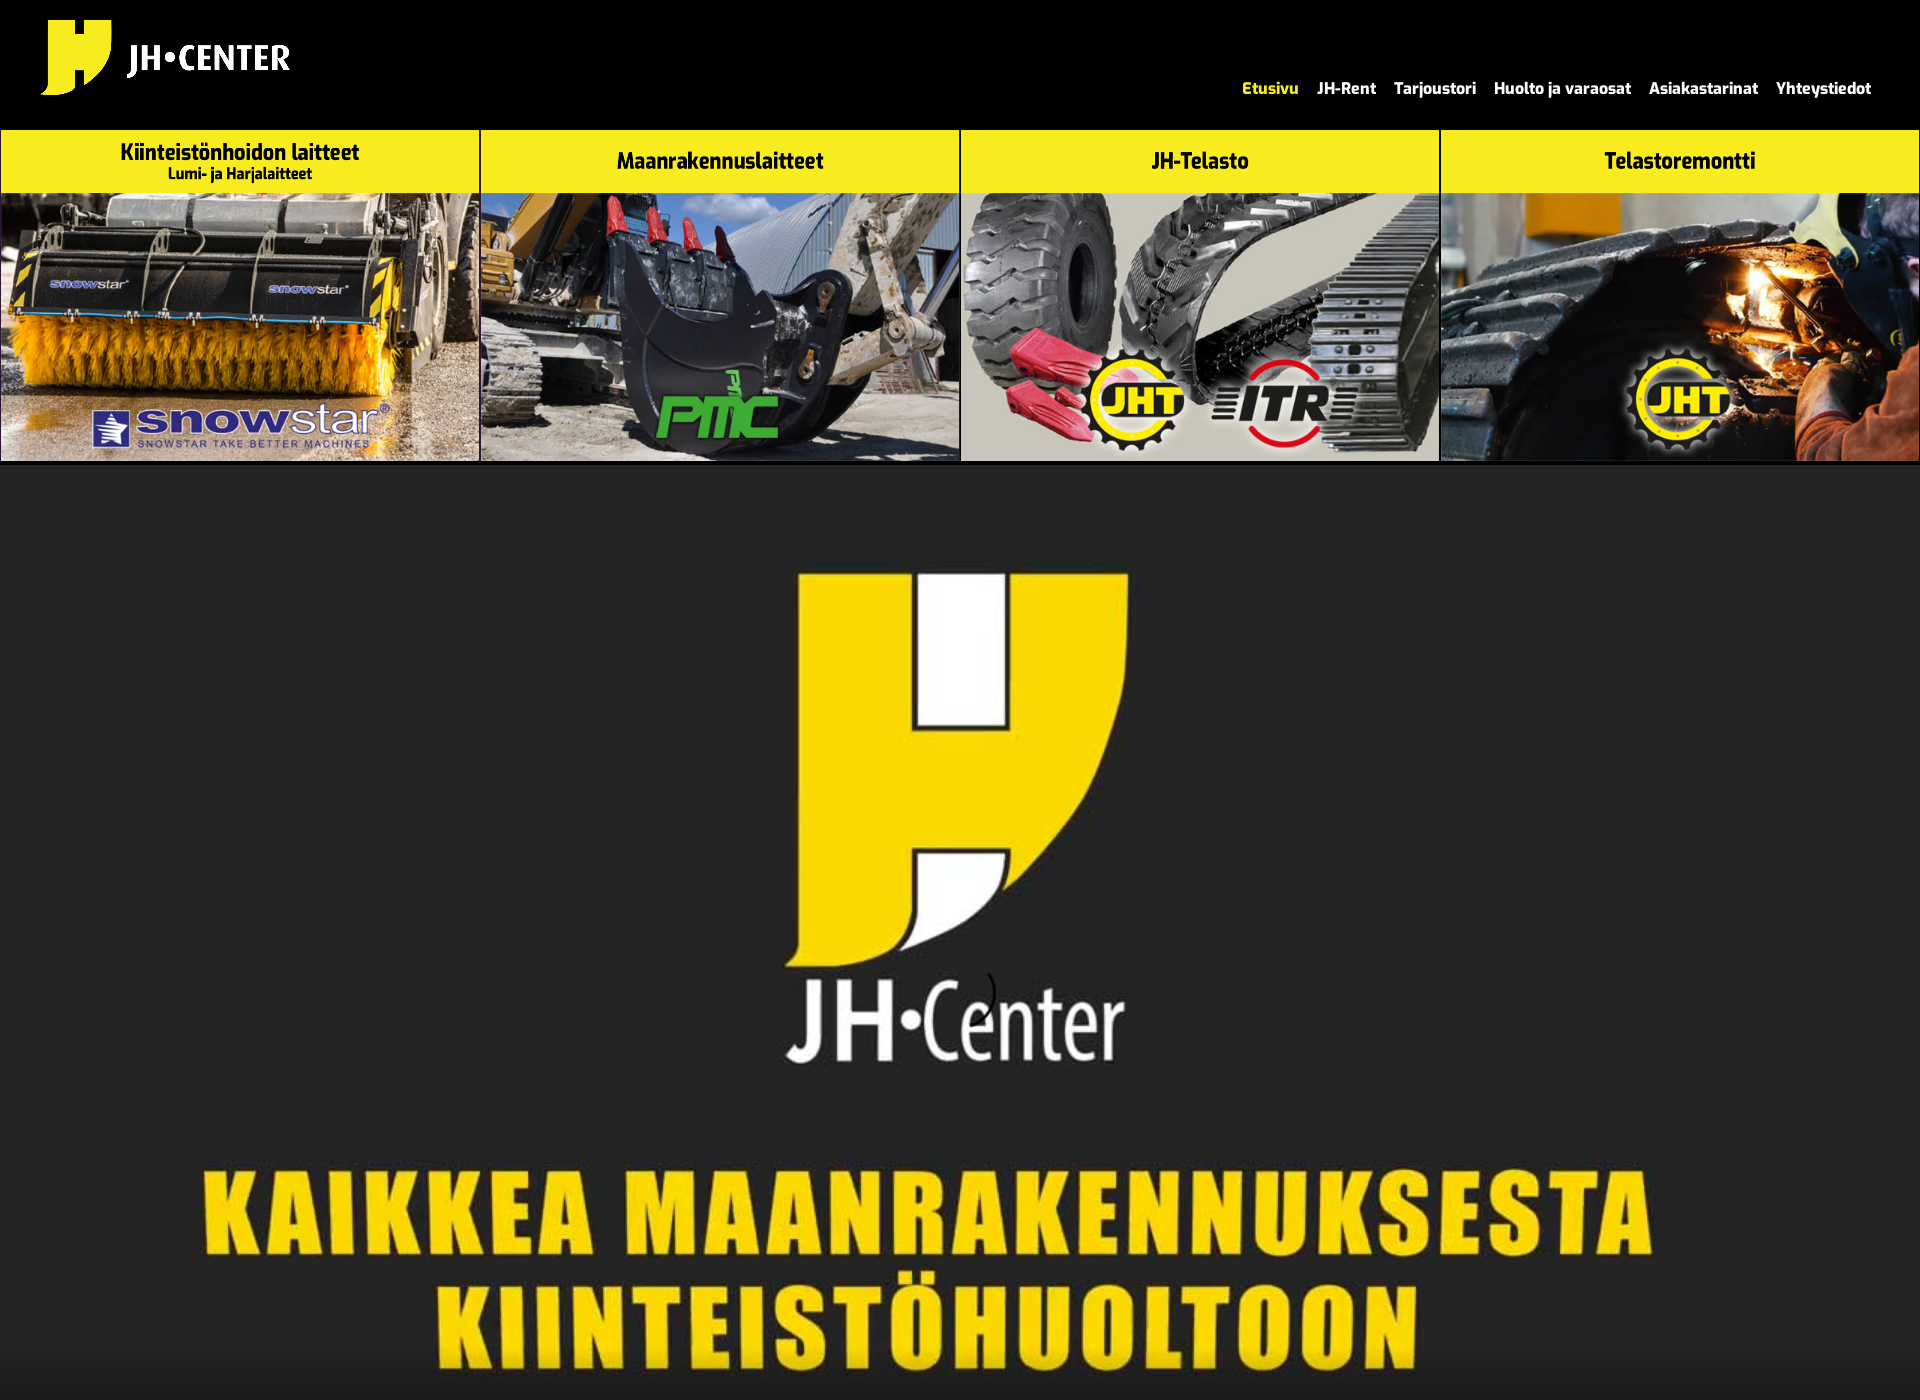 Skärmdump för jhtelasto.fi